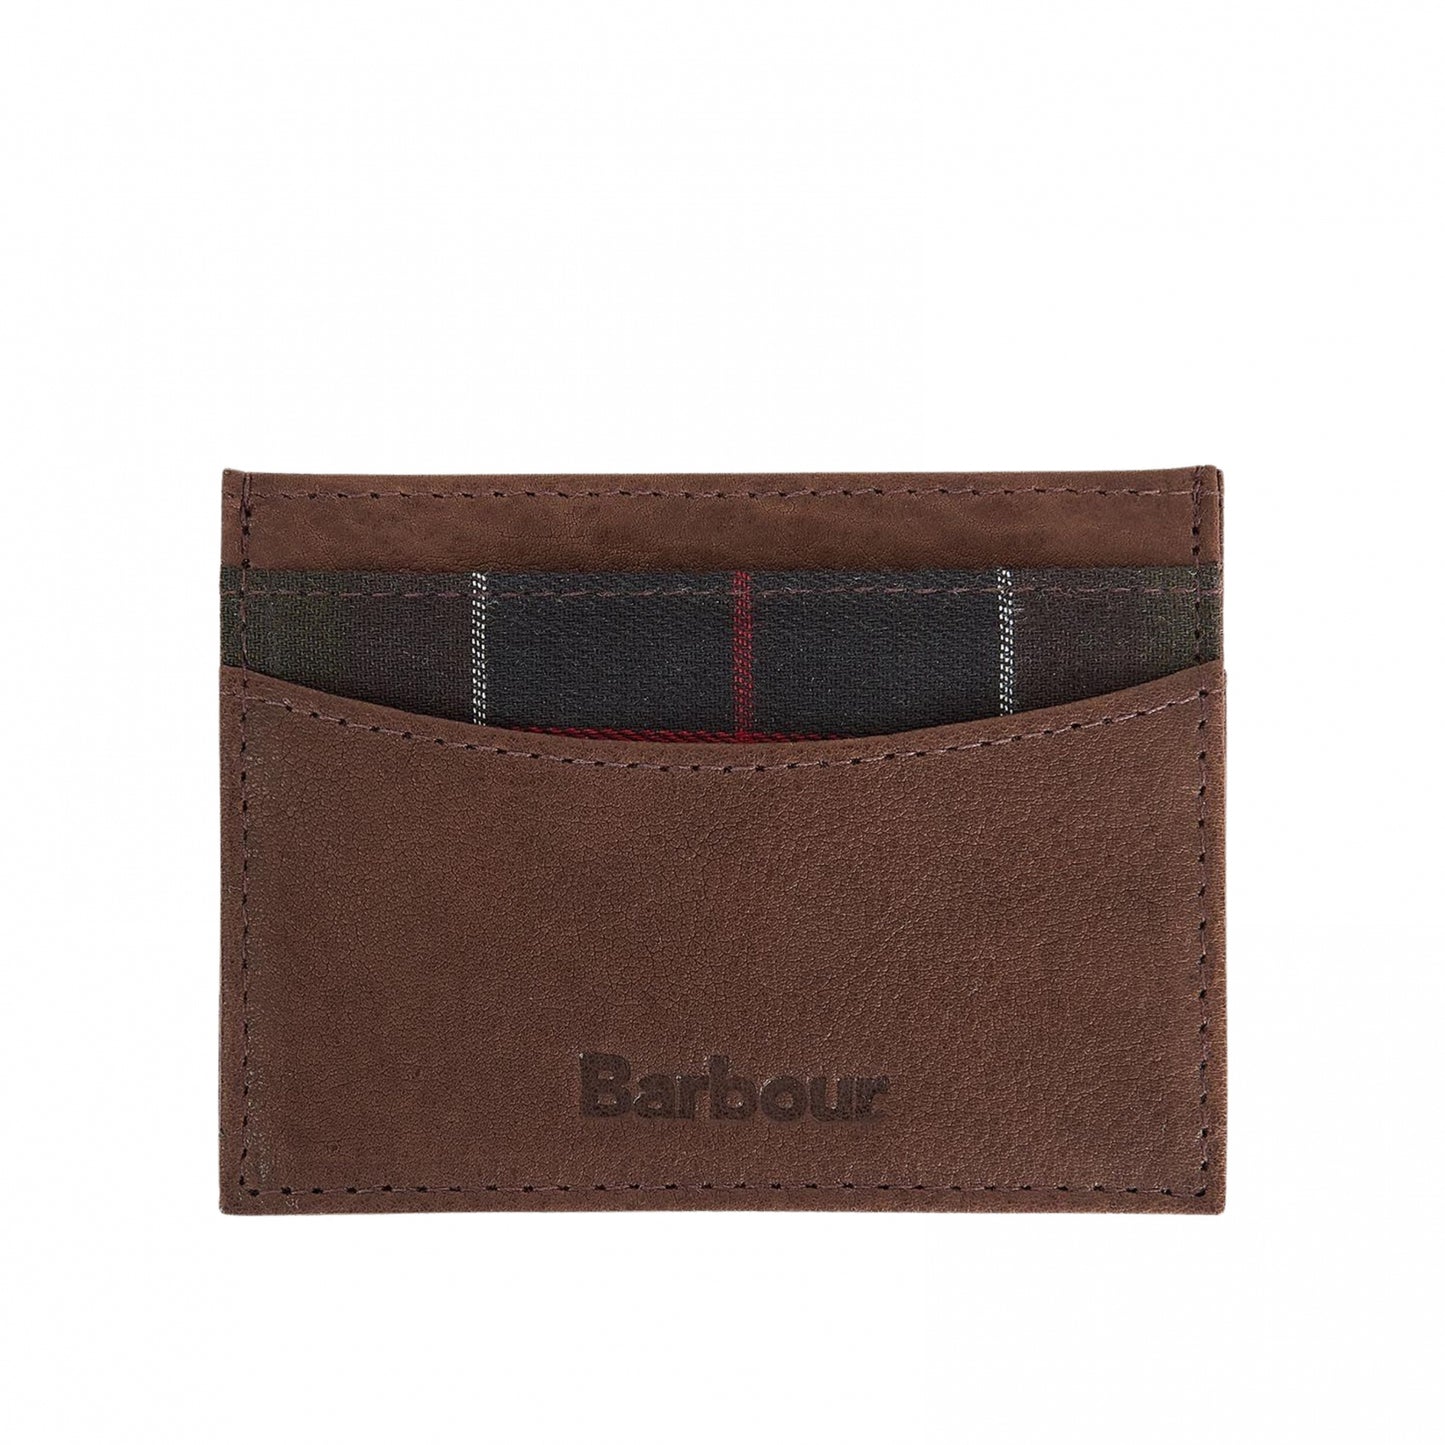 Set Regalo Barbour Leather Valet Tray Card Holder TARTAN